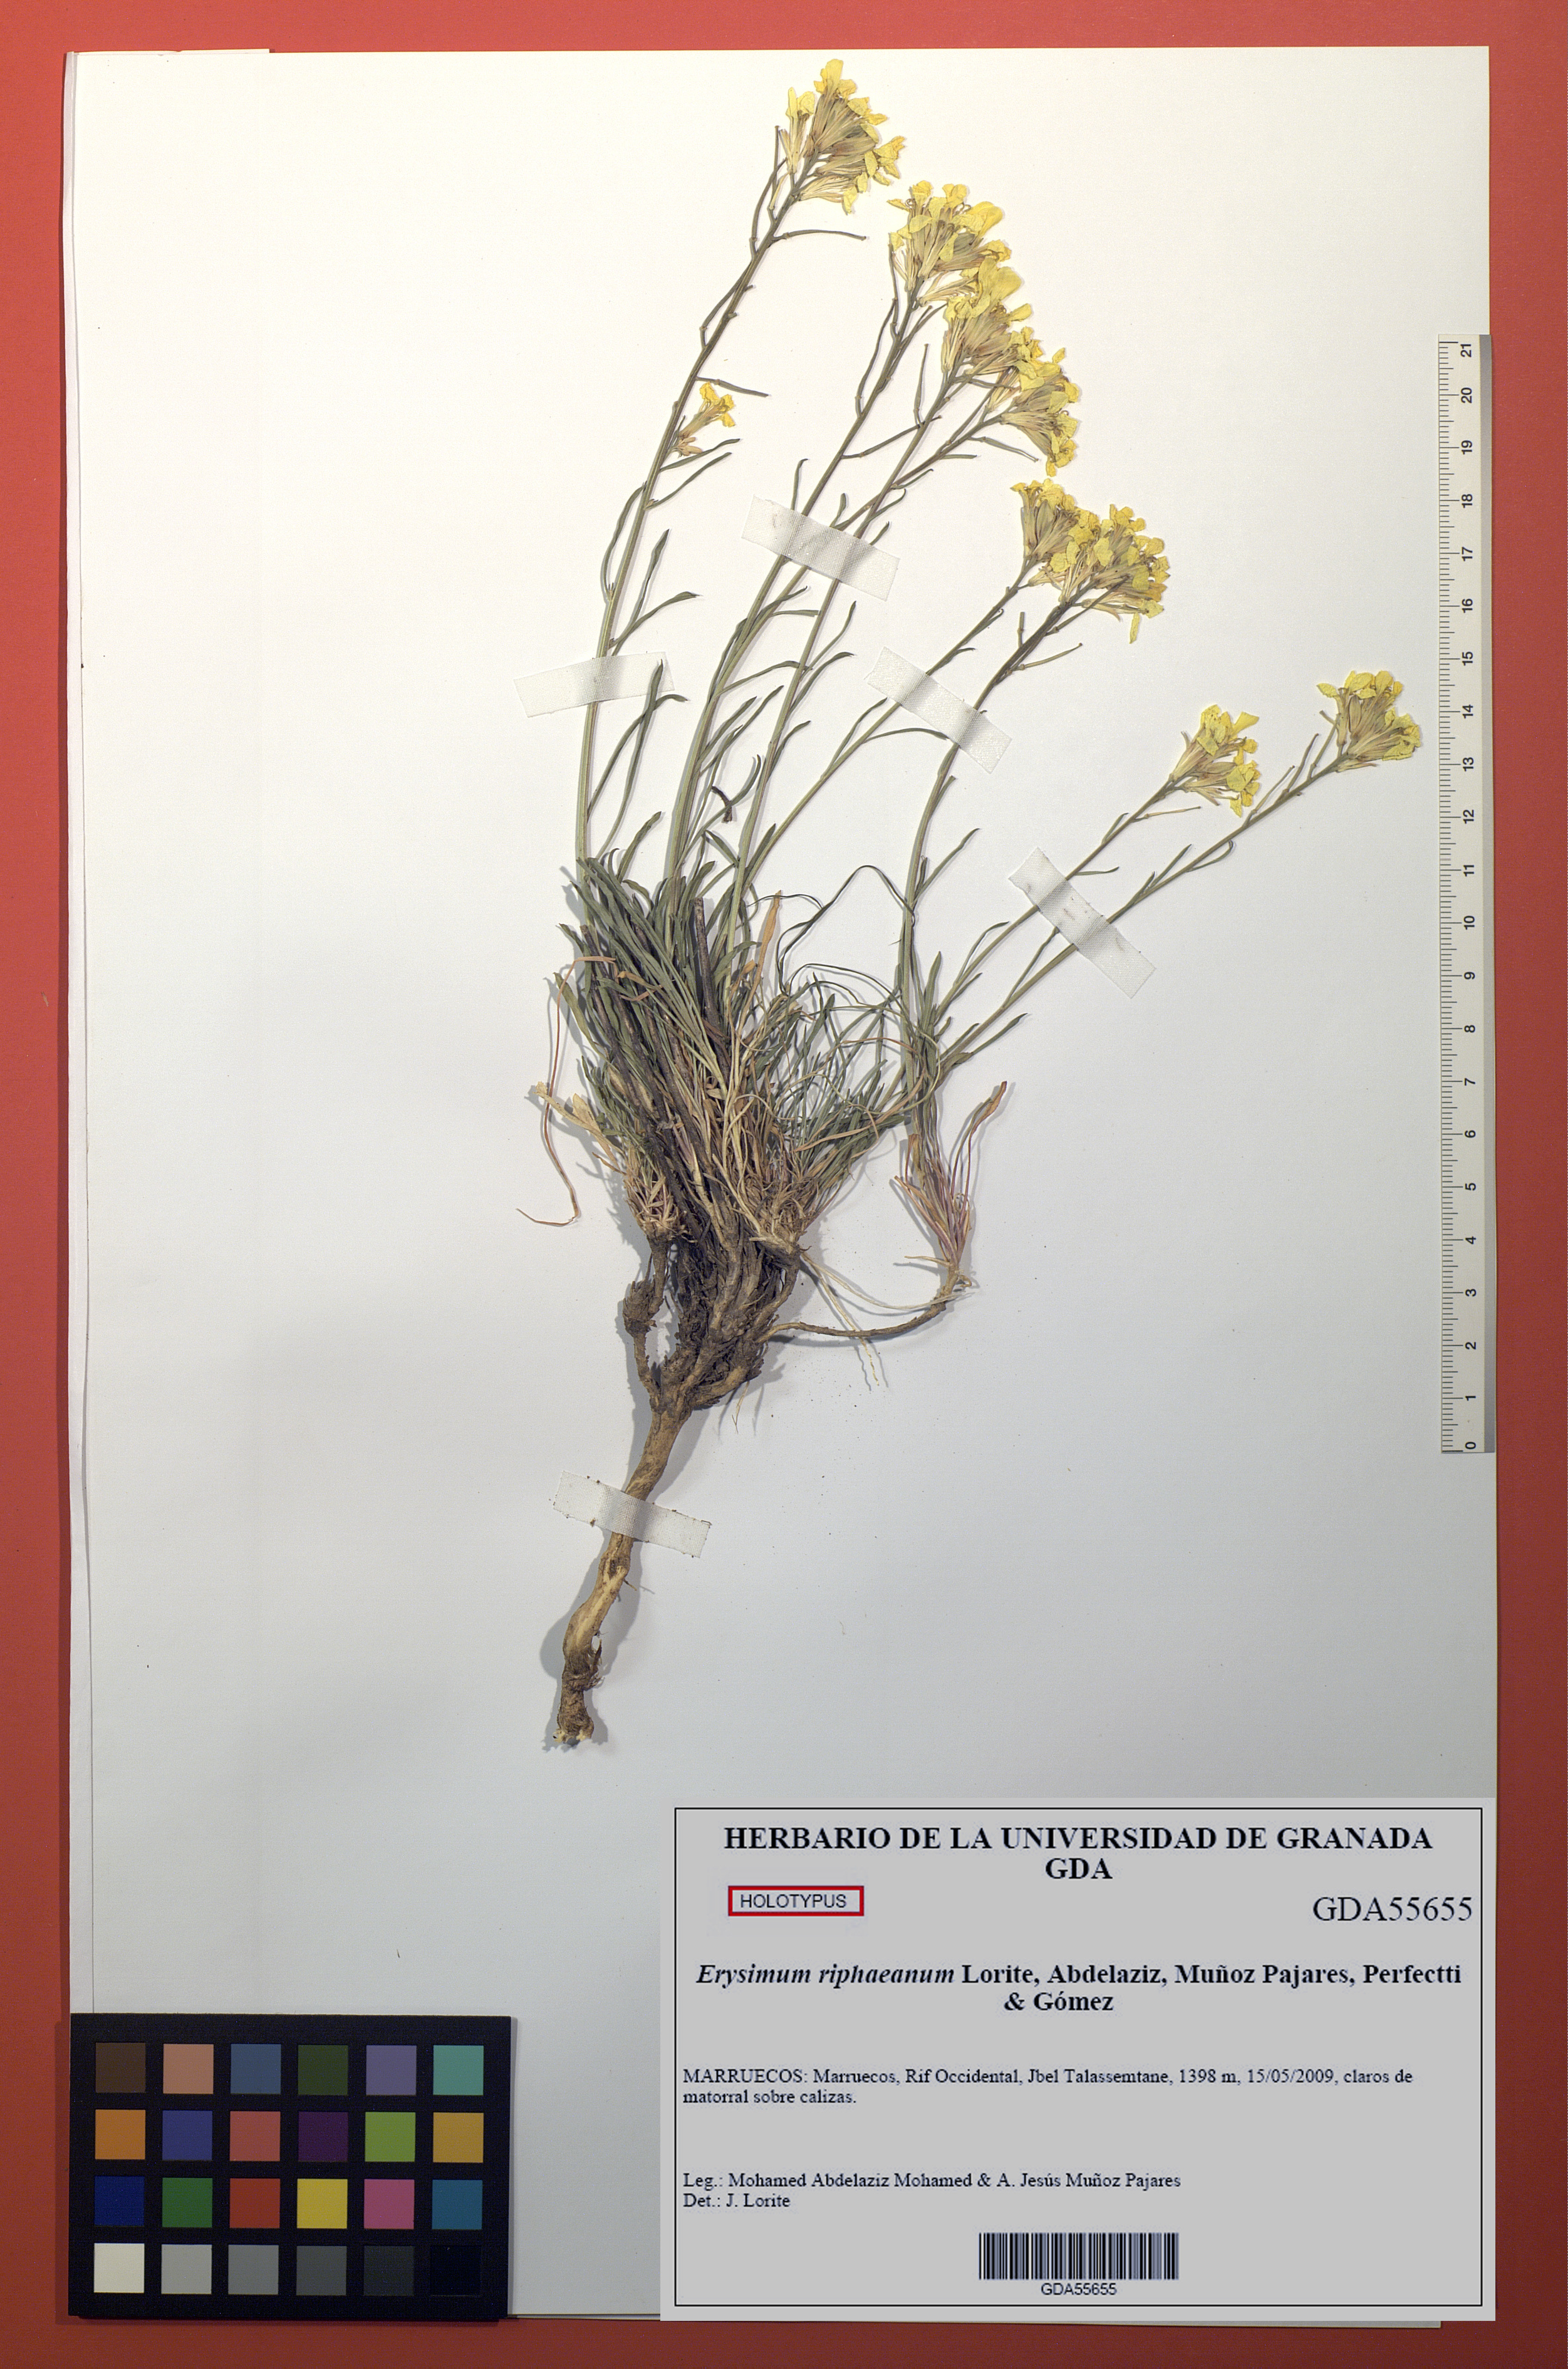 El Herbario de la Universidad de Granada digitaliza su catálogo de tipos nomenclaturales, con 679 ejemplares